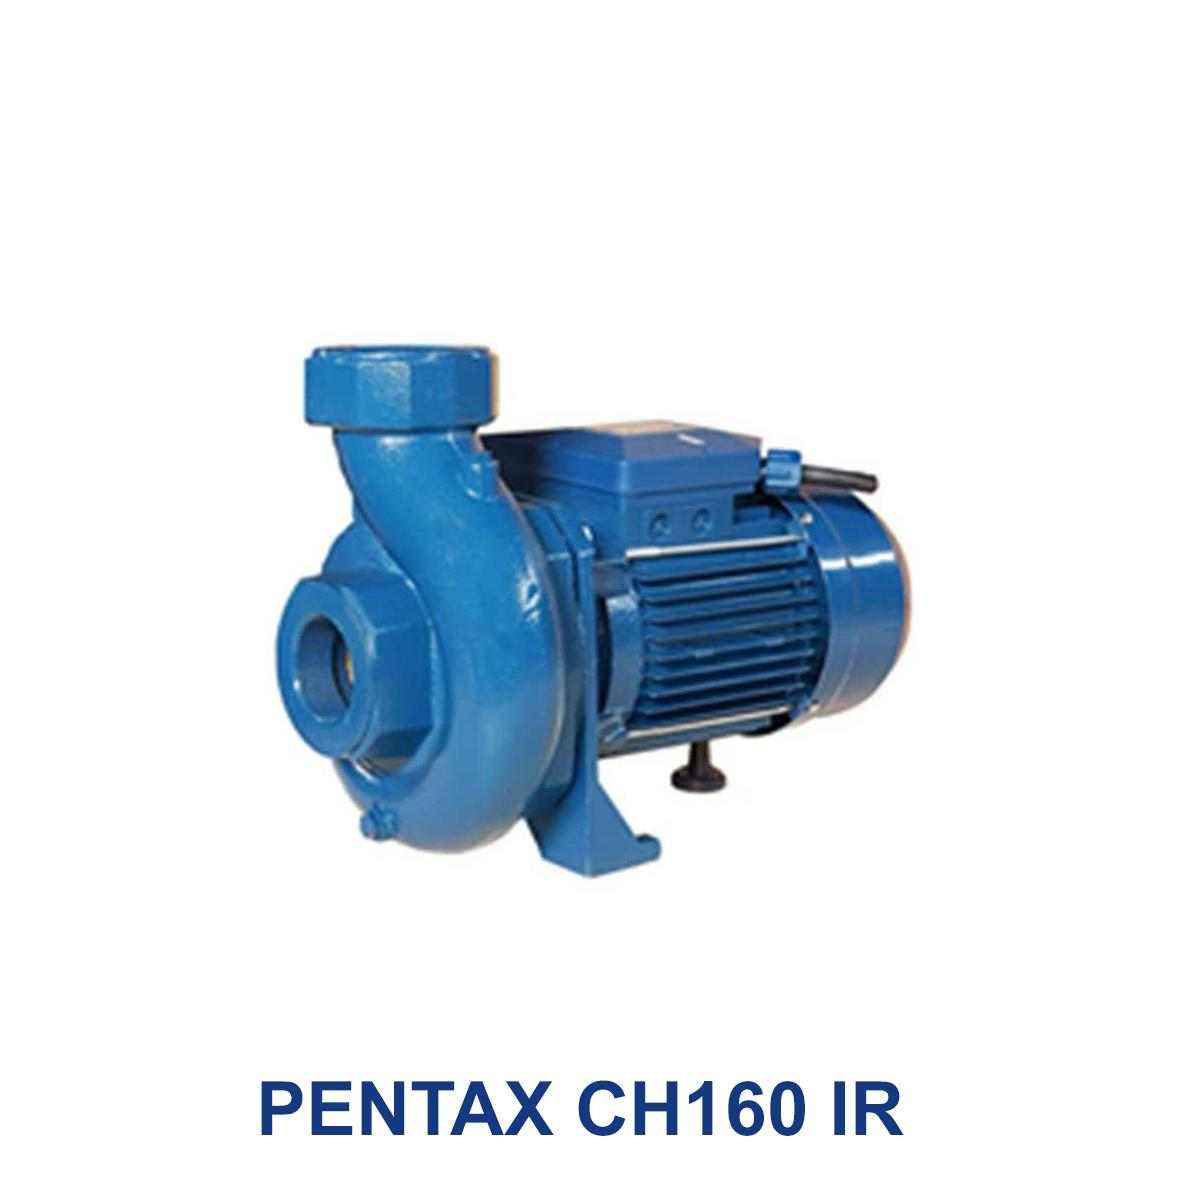 PENTAX-CH160-IR